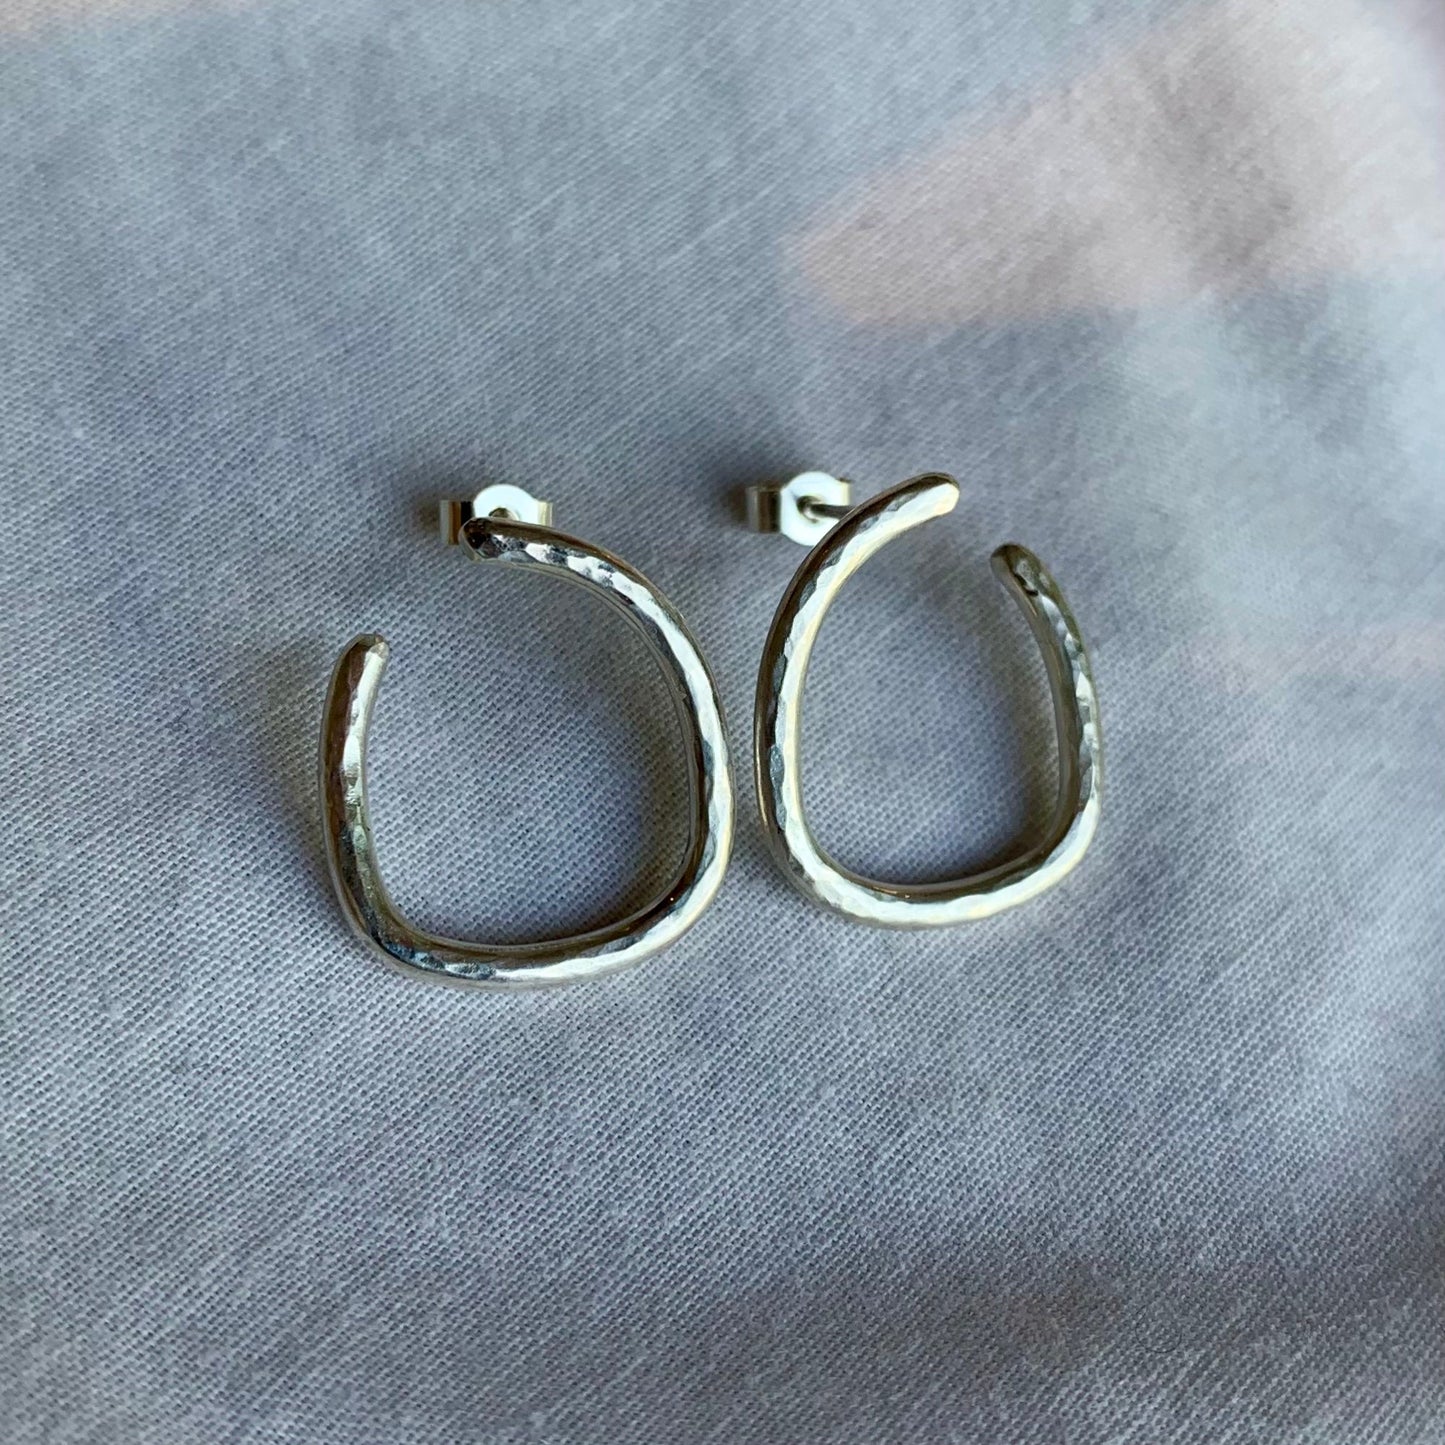 Handmade hammered sterling silver irregular hoop earrings.